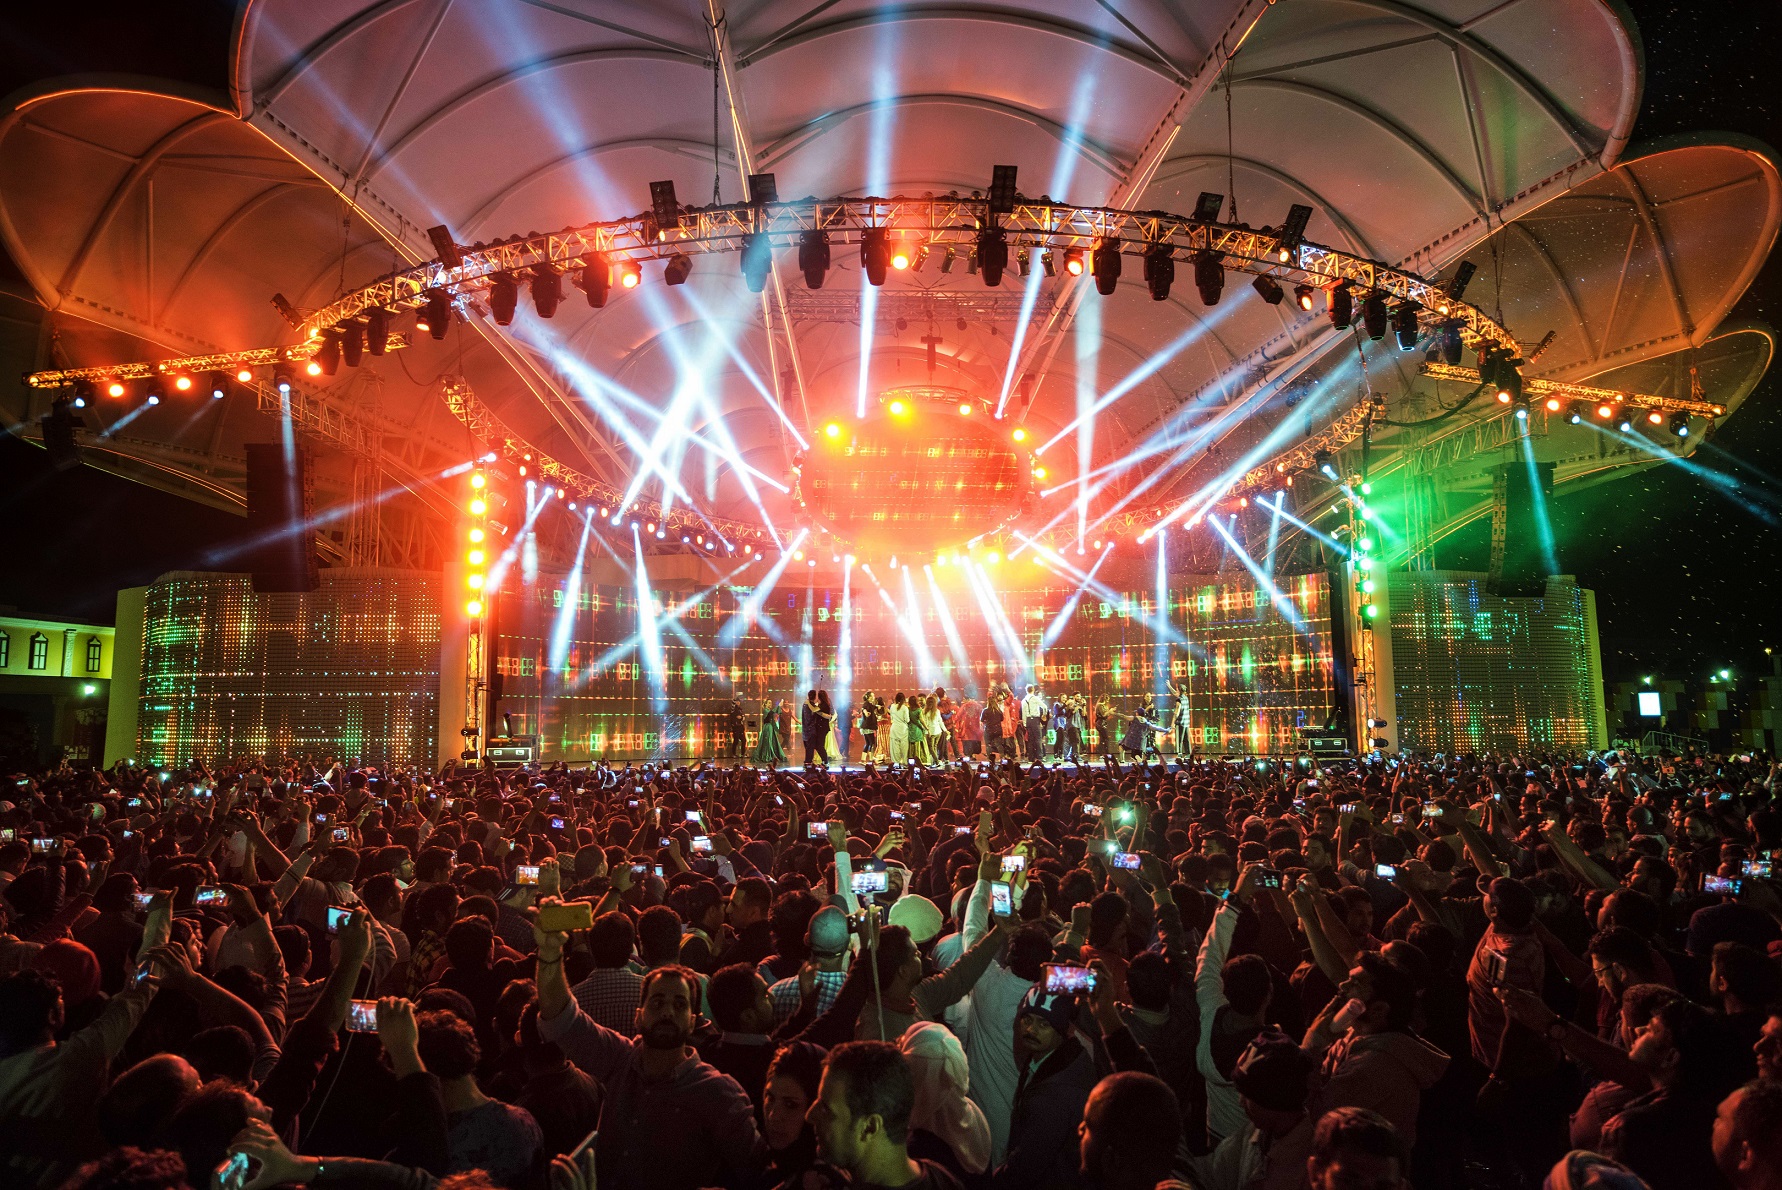 القرية العالمية تنظم أكبر حفل افتراضي لموسيقى الروك يجمع ثقافات العالم في دبي